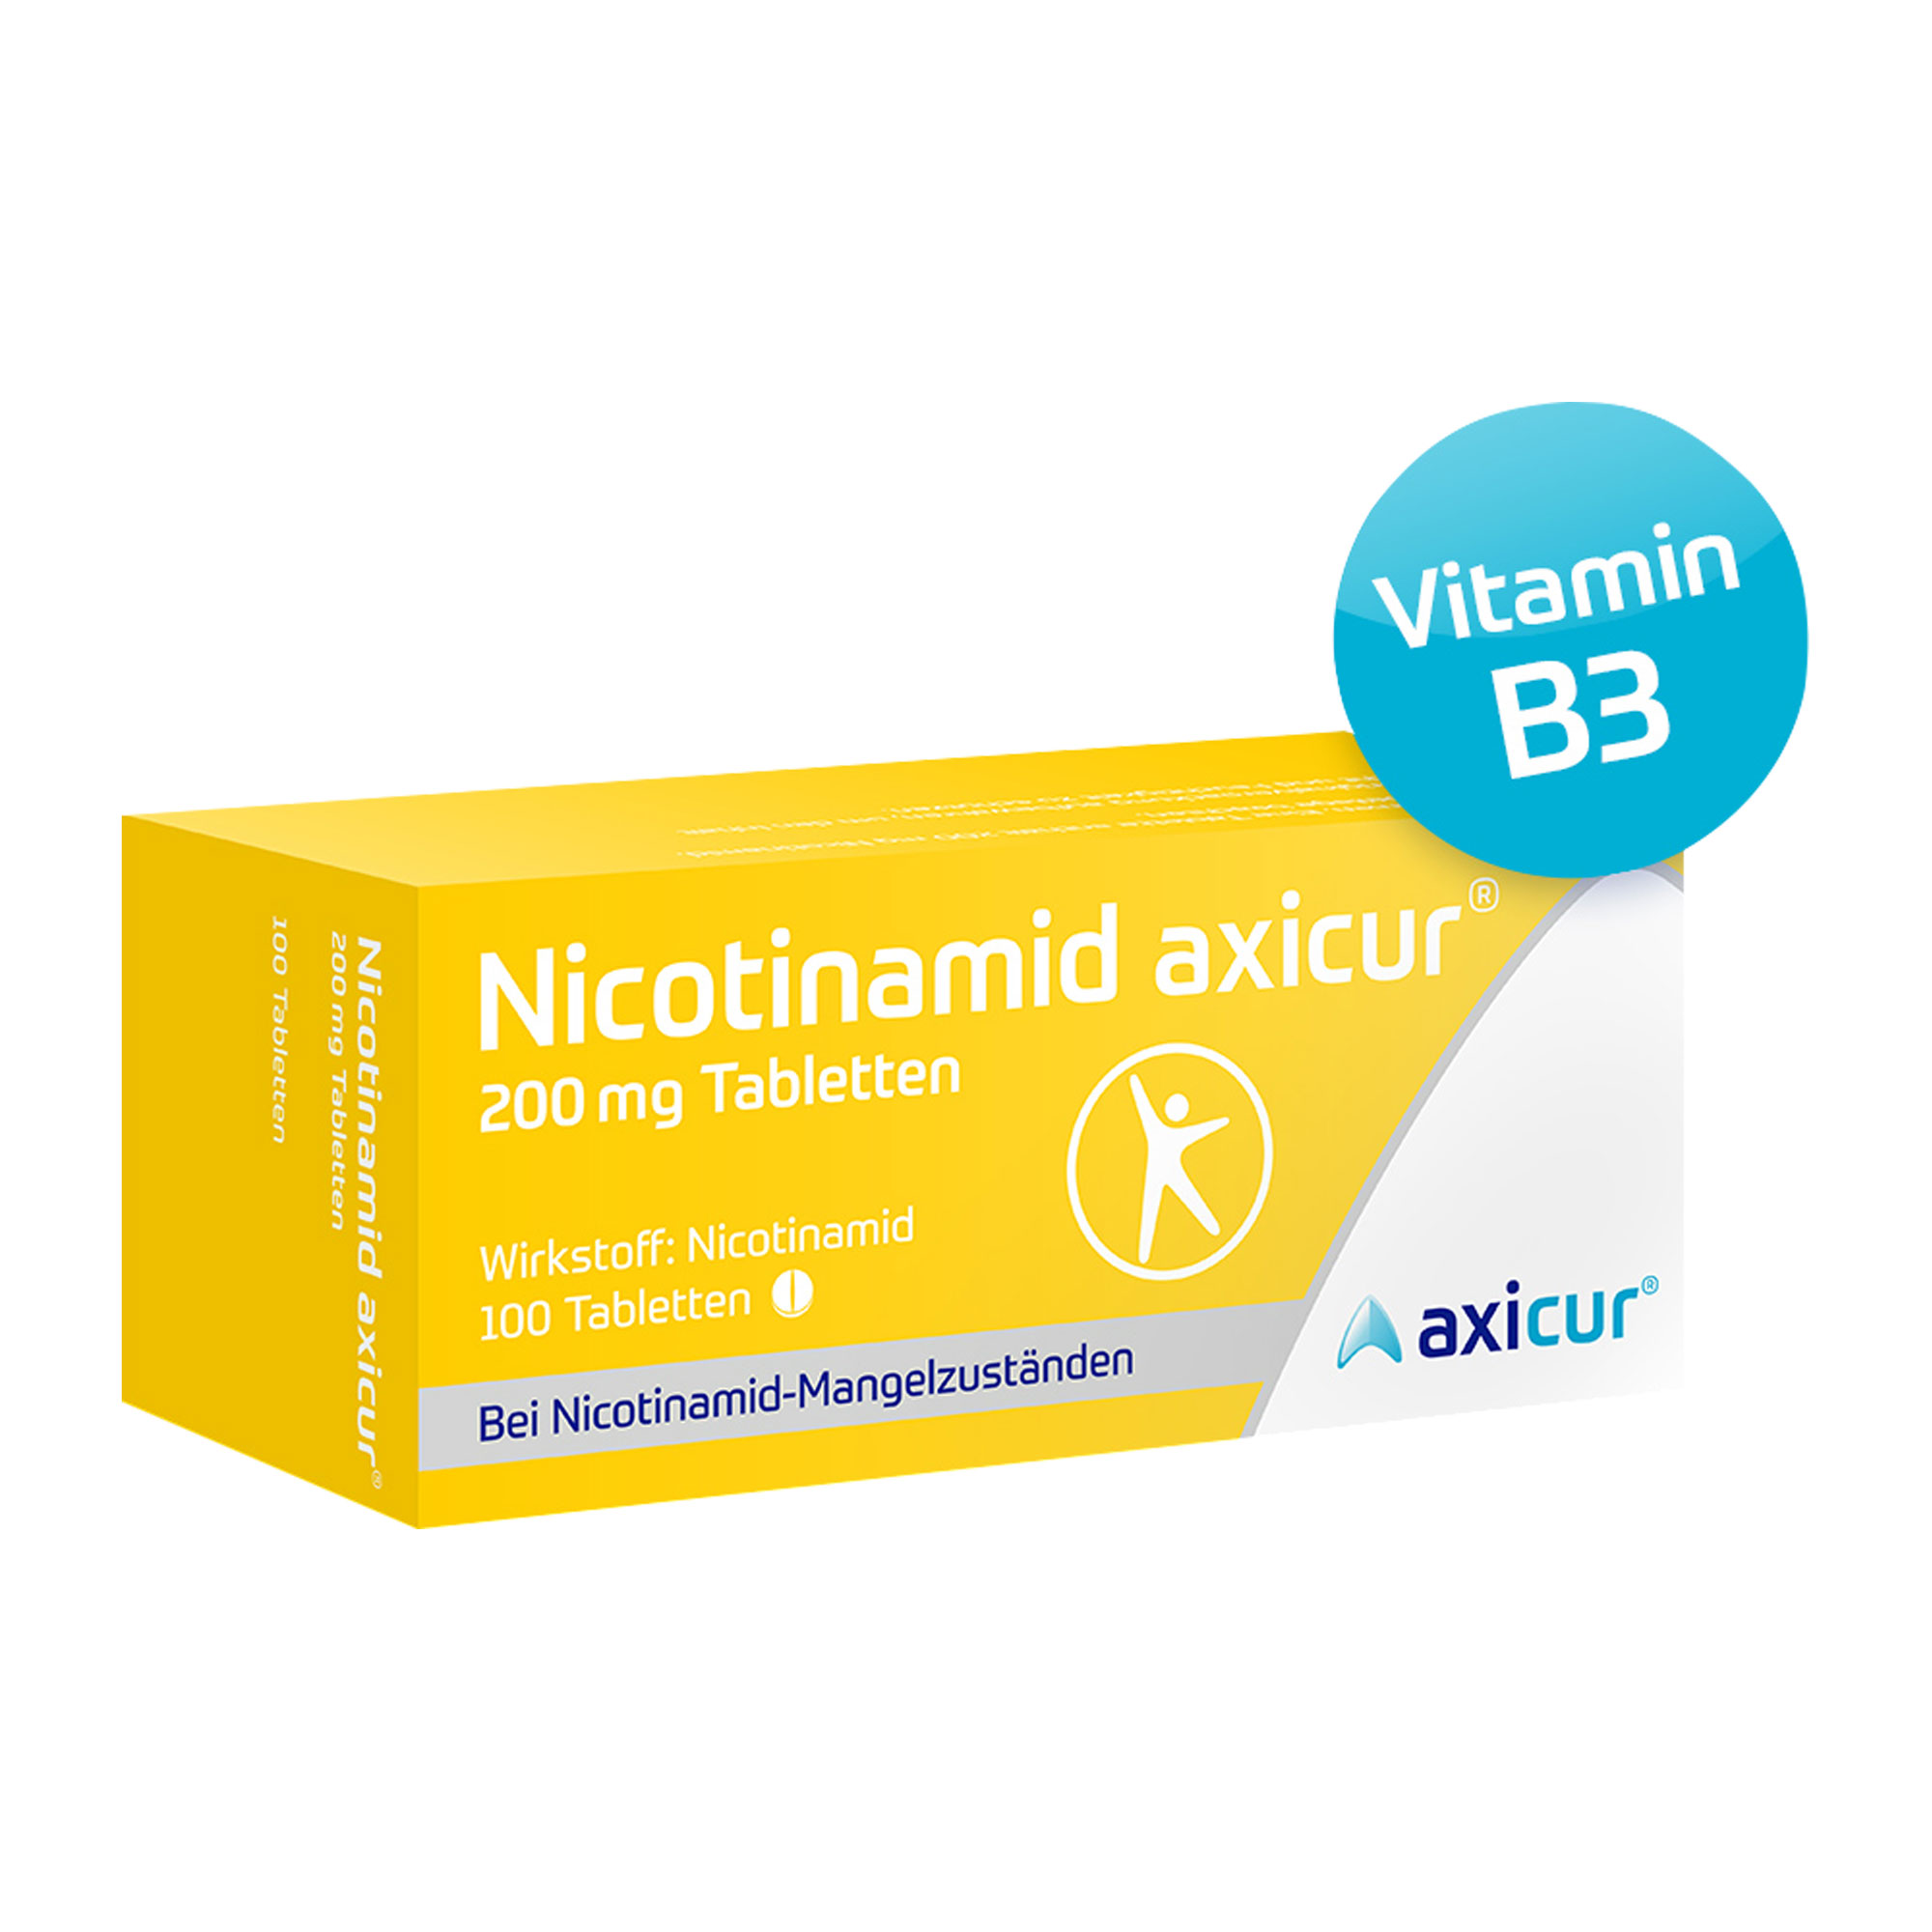 Nicotinamid auch bekannt als Vitamin B3 oder Niacin. Zur Behandlung klinischer Nicotinamid-Mangelzustände bei Mangel- und Fehlernährung.